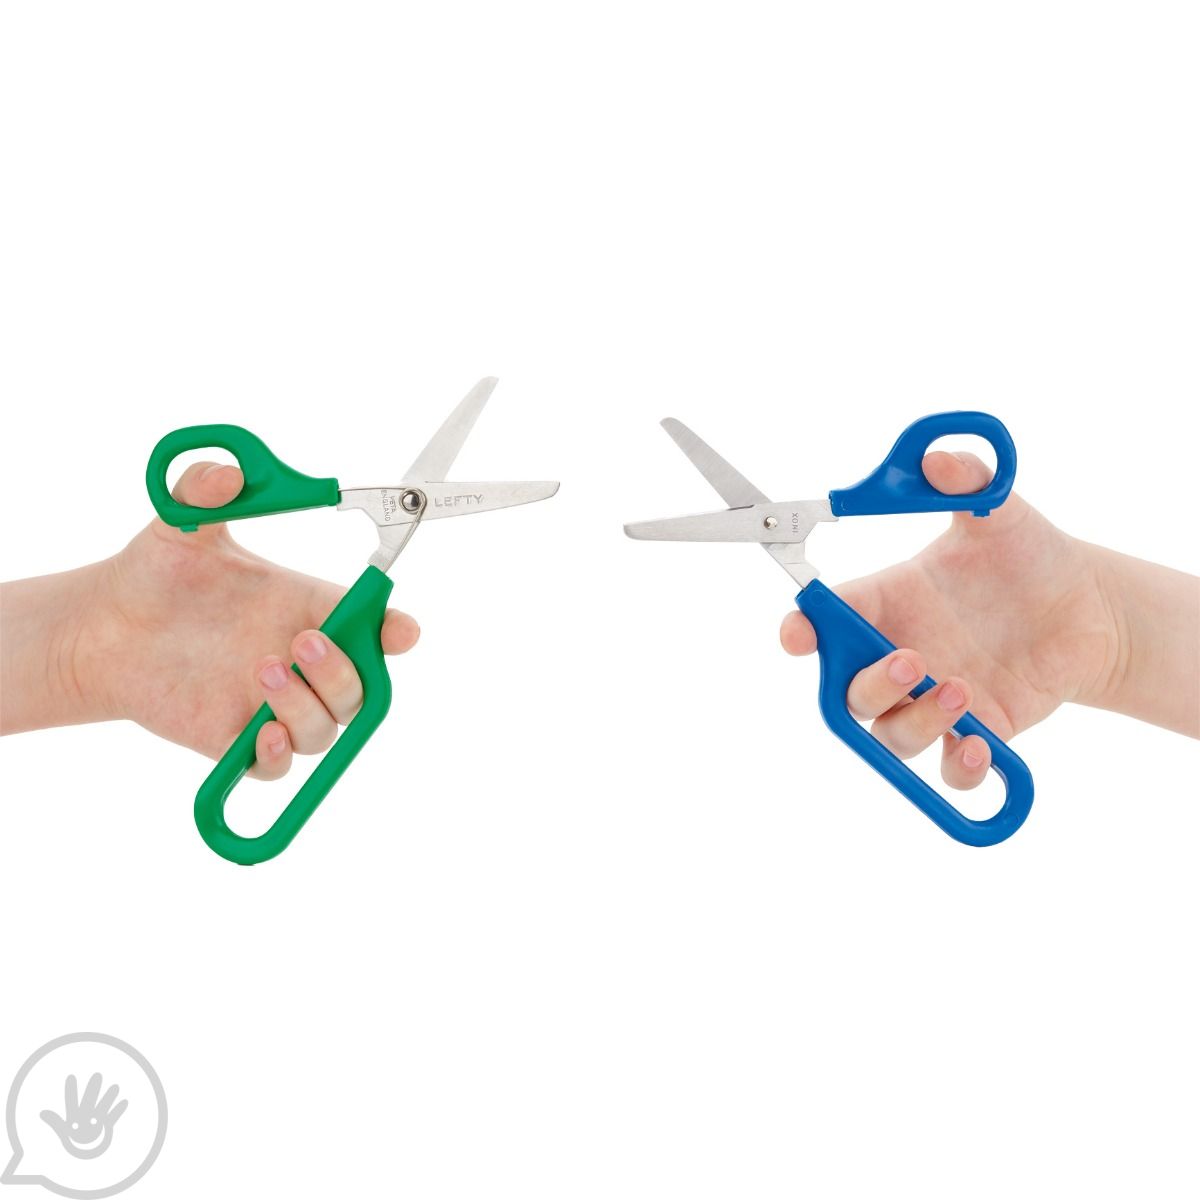 Neikafan 3 Pcs Loop Scissors for Kids Easy Grip Scissors Self